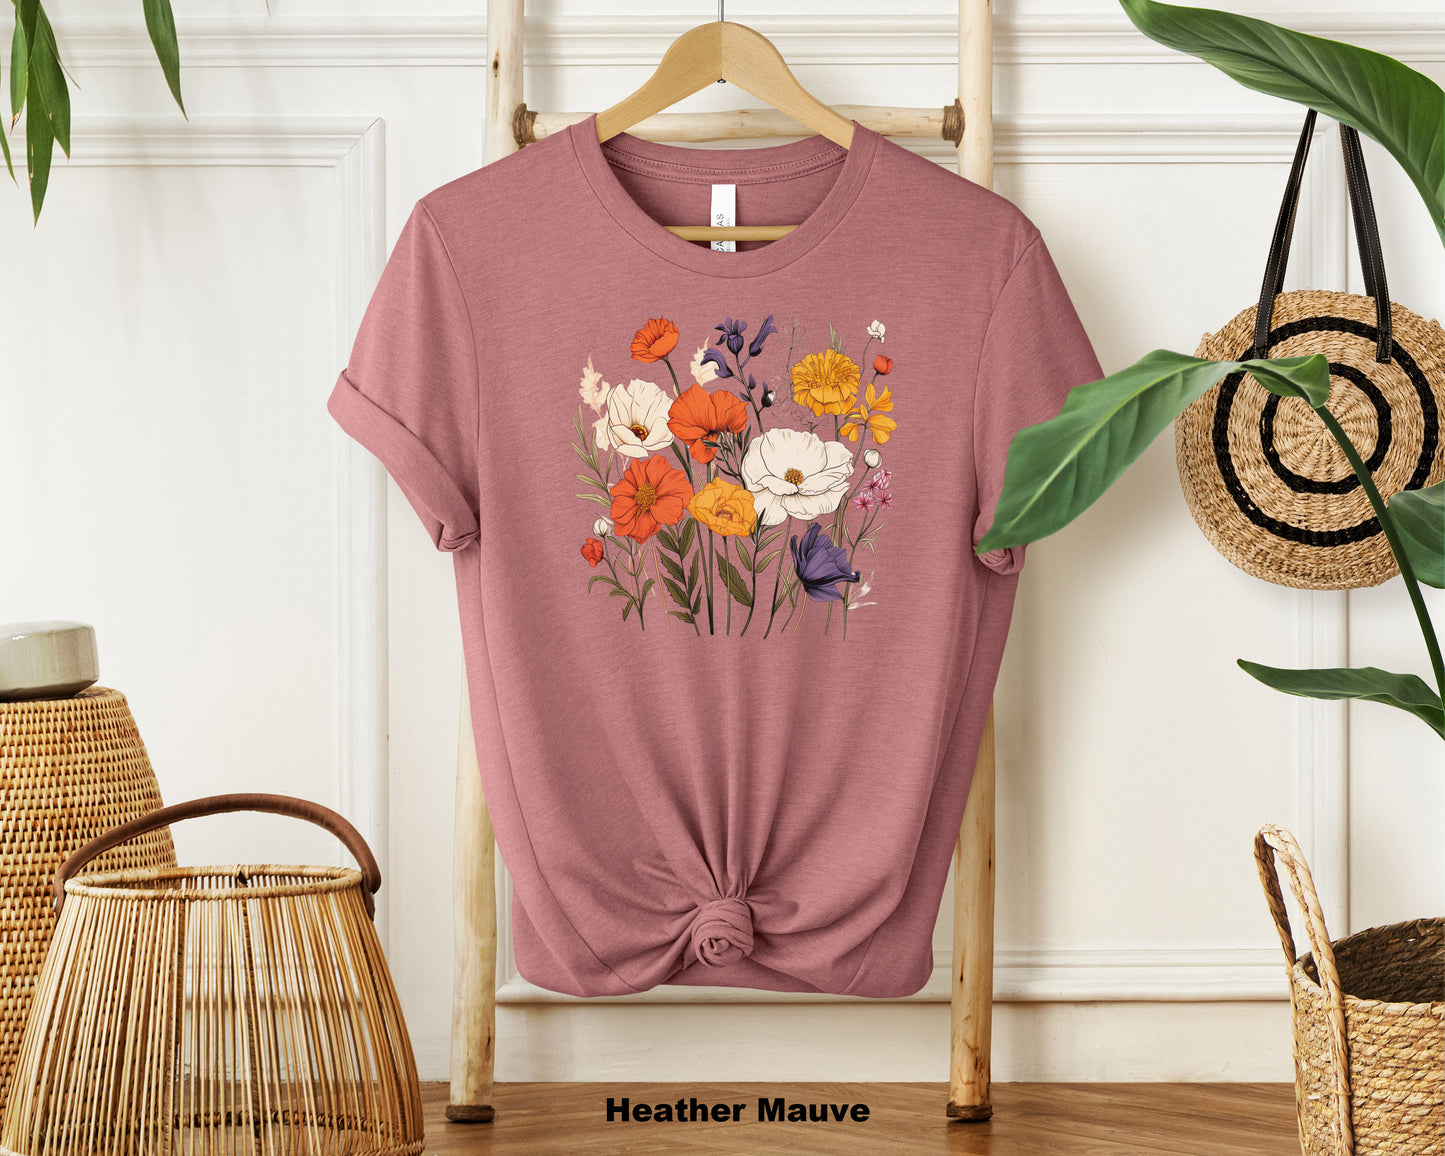 Enchanted Garden Neutral Floral Shirt - Women's Botanical Tee